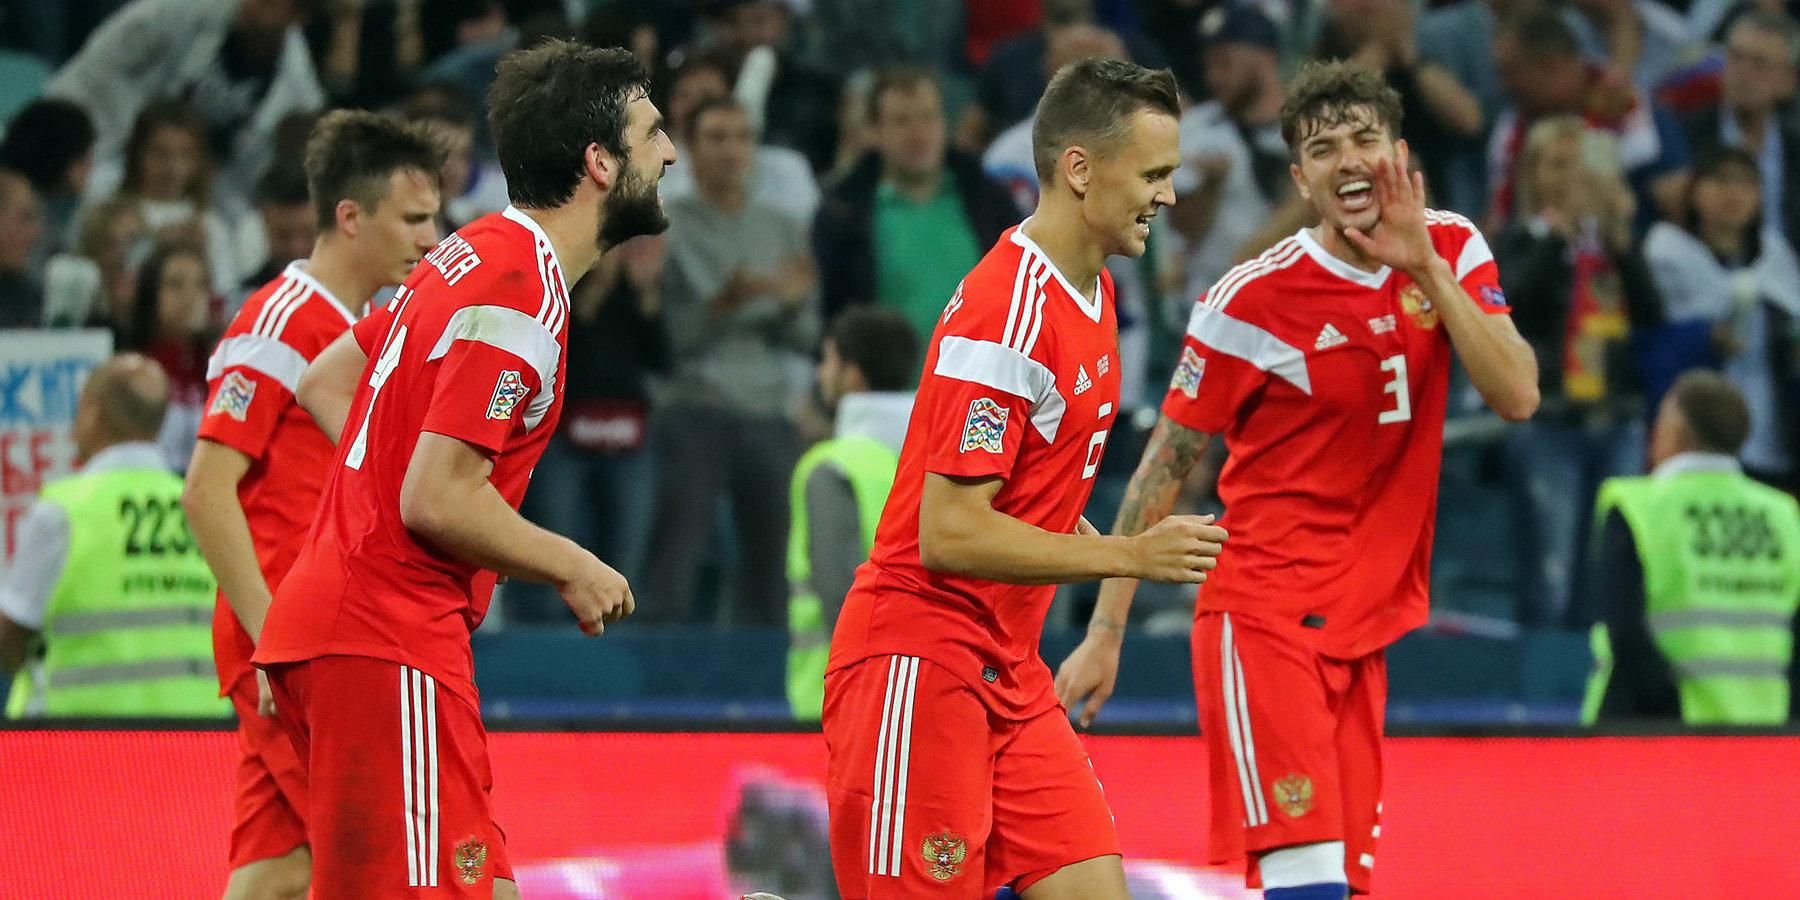 Бельгія - Росія прогноз, ставки букмекерів на матч кваліфікації Євро-2020